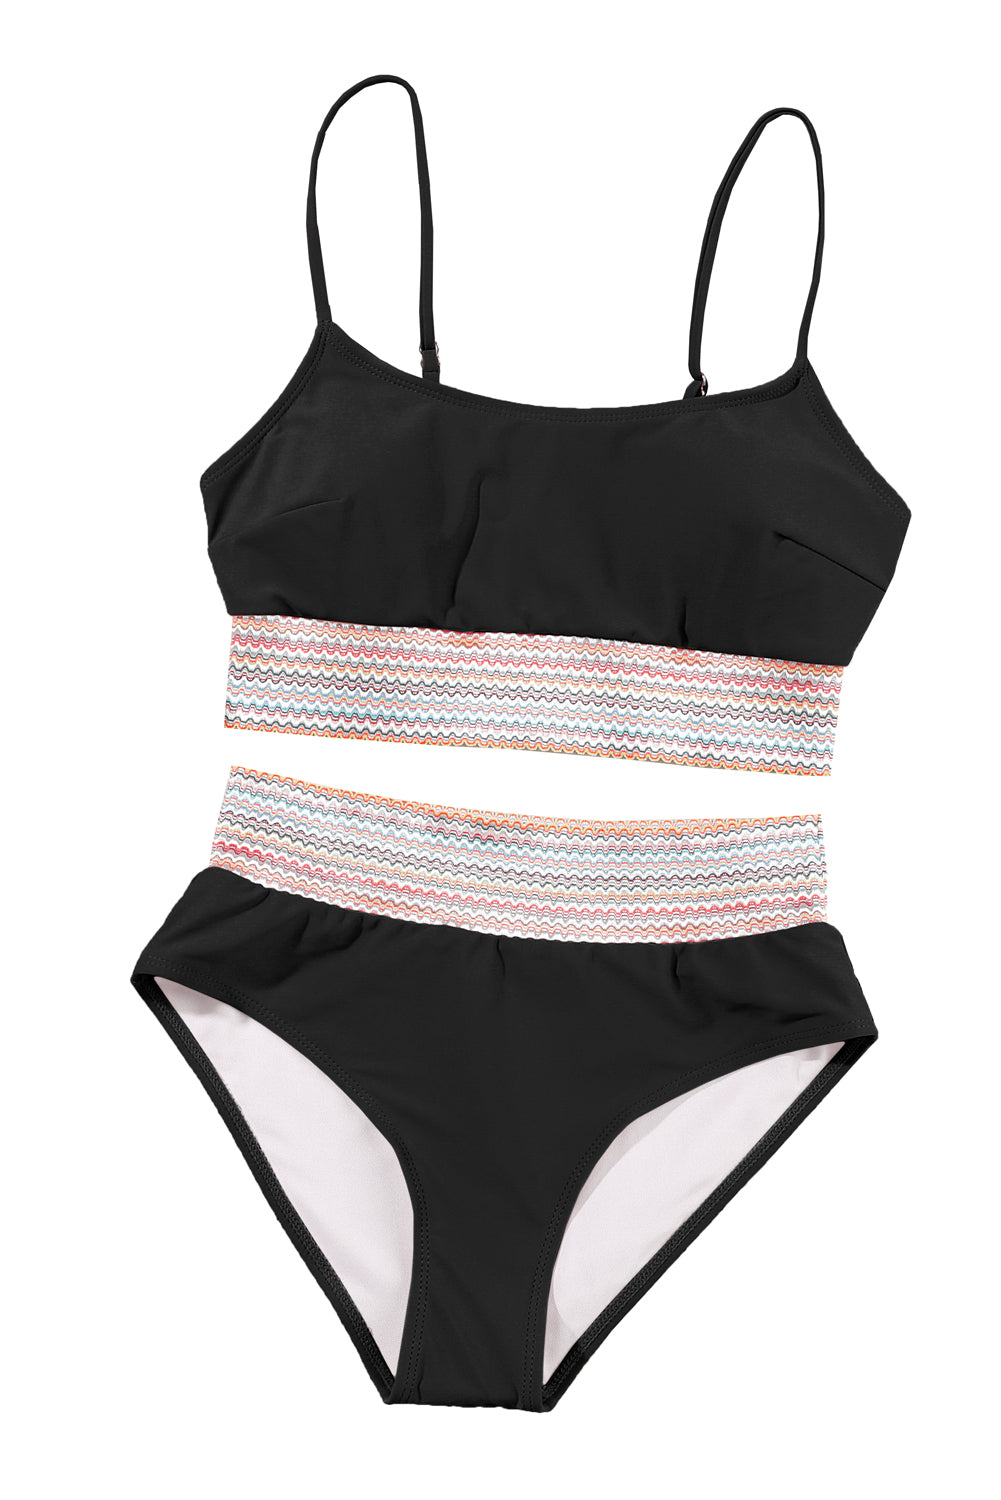 Crni prugasti bikini kupaći kostim s visokim strukom na naramenice